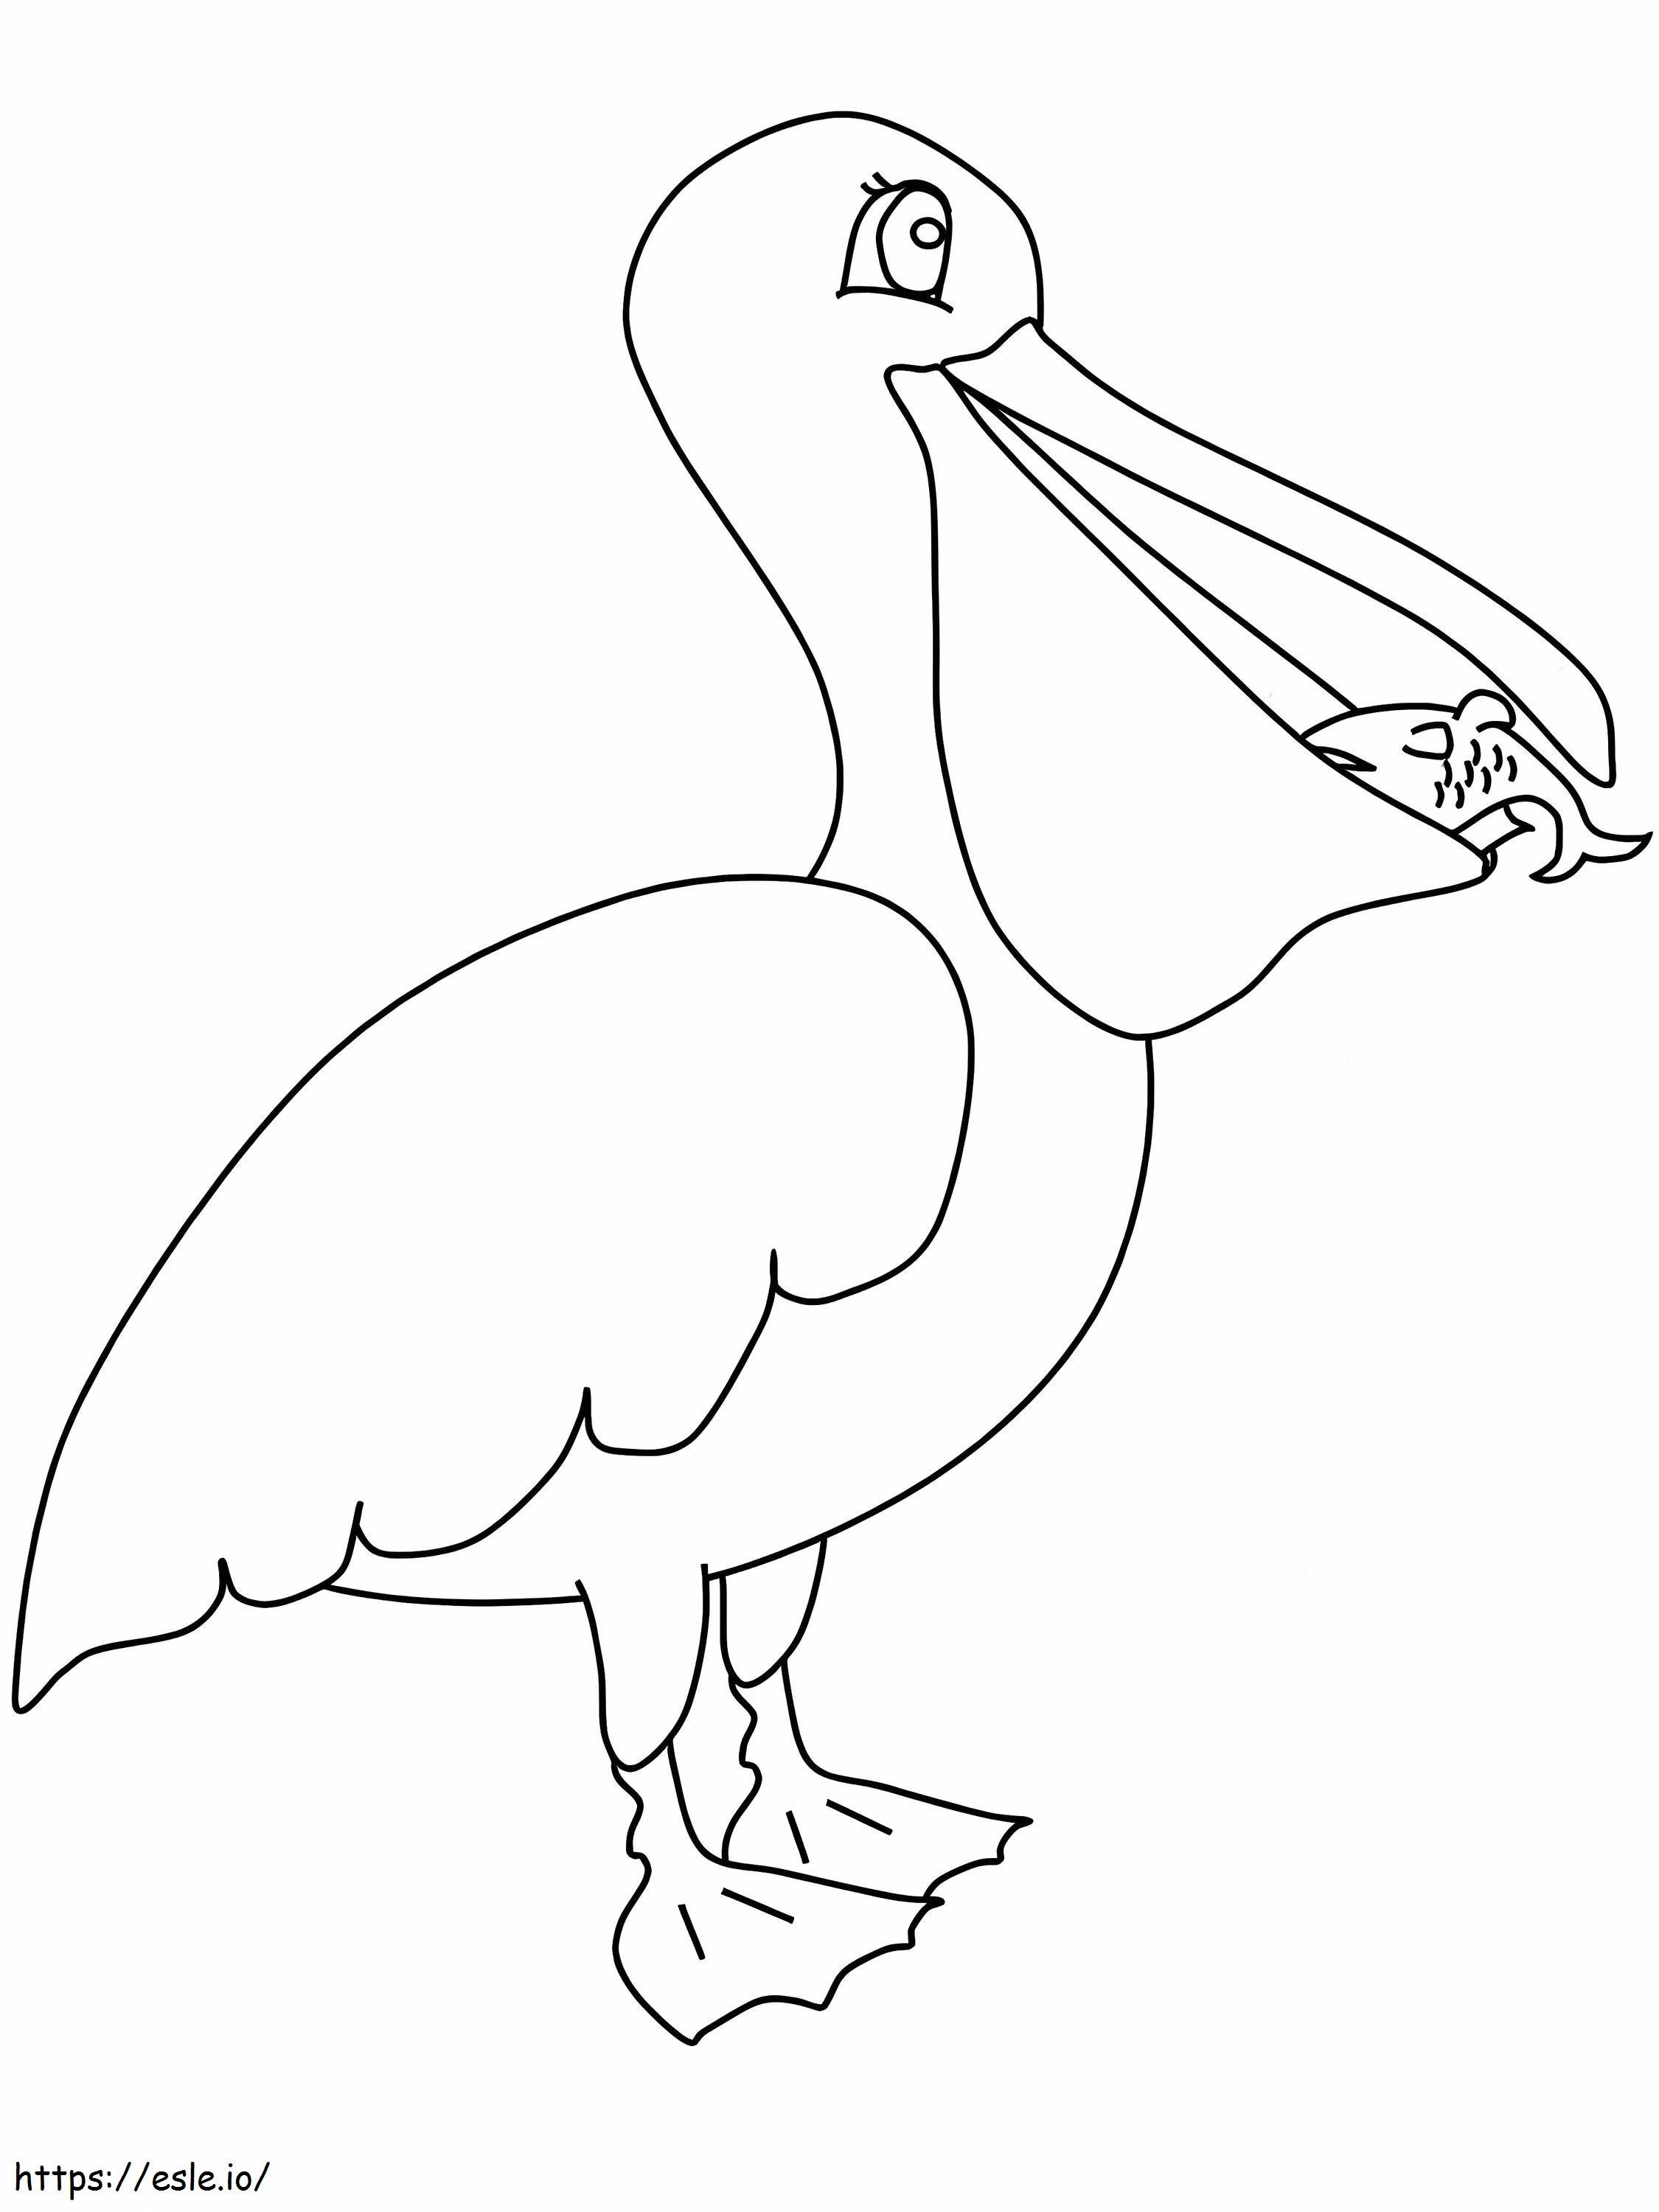 Pelikan jedzący ryby kolorowanka